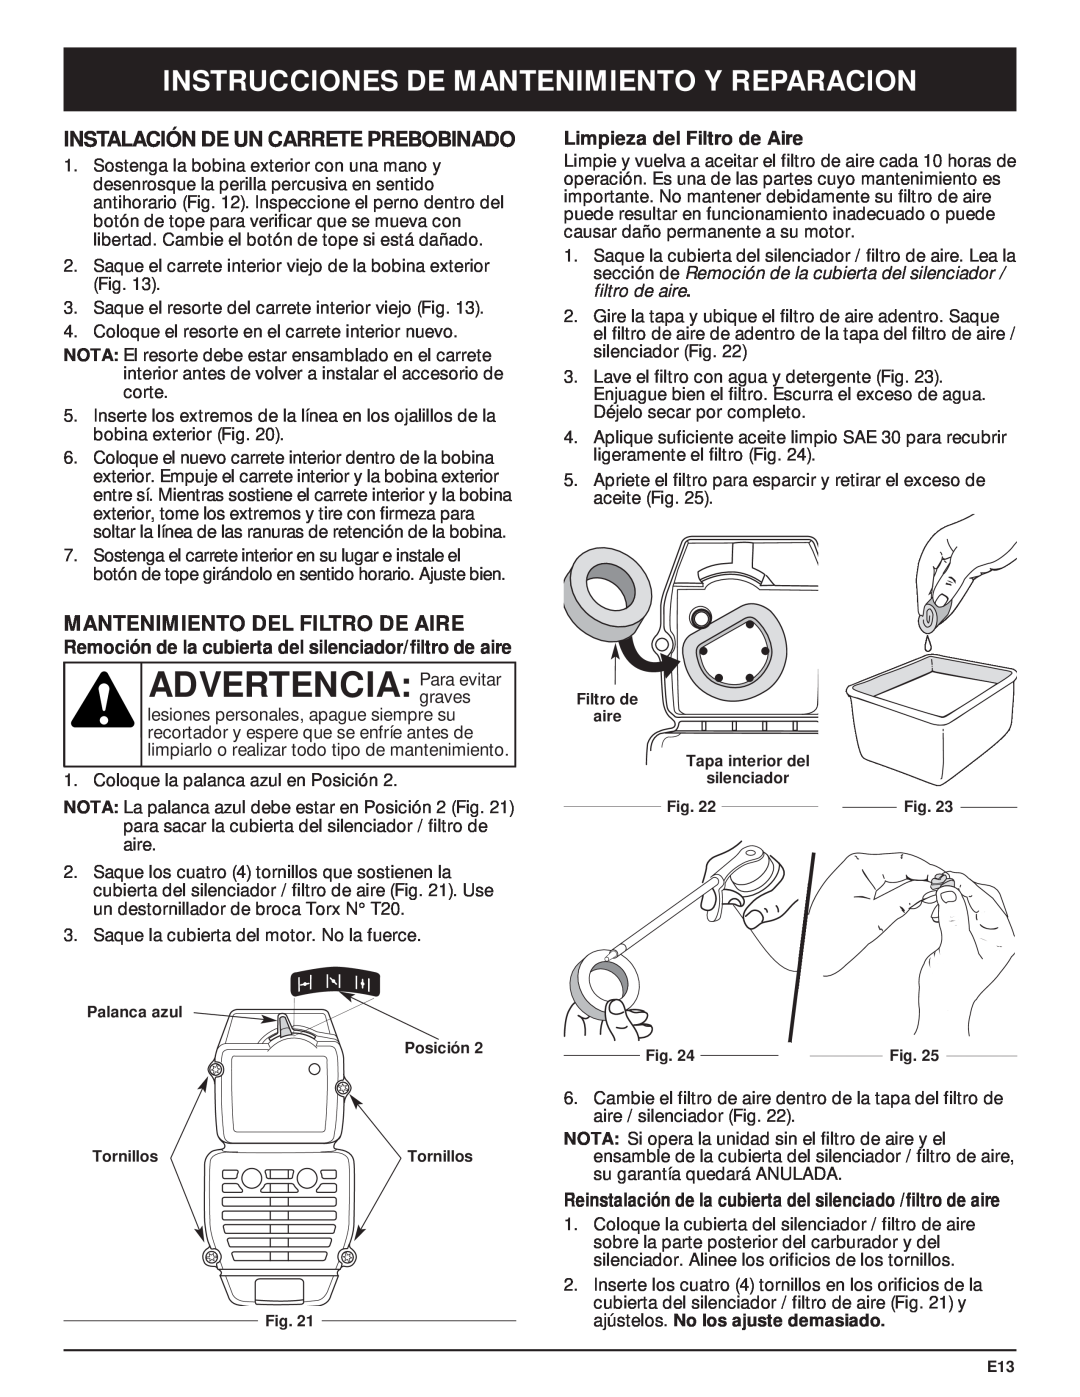 MTD MT700 manual Instalación De Un Carrete Prebobinado, Mantenimiento Del Filtro De Aire, Limpieza del Filtro de Aire 